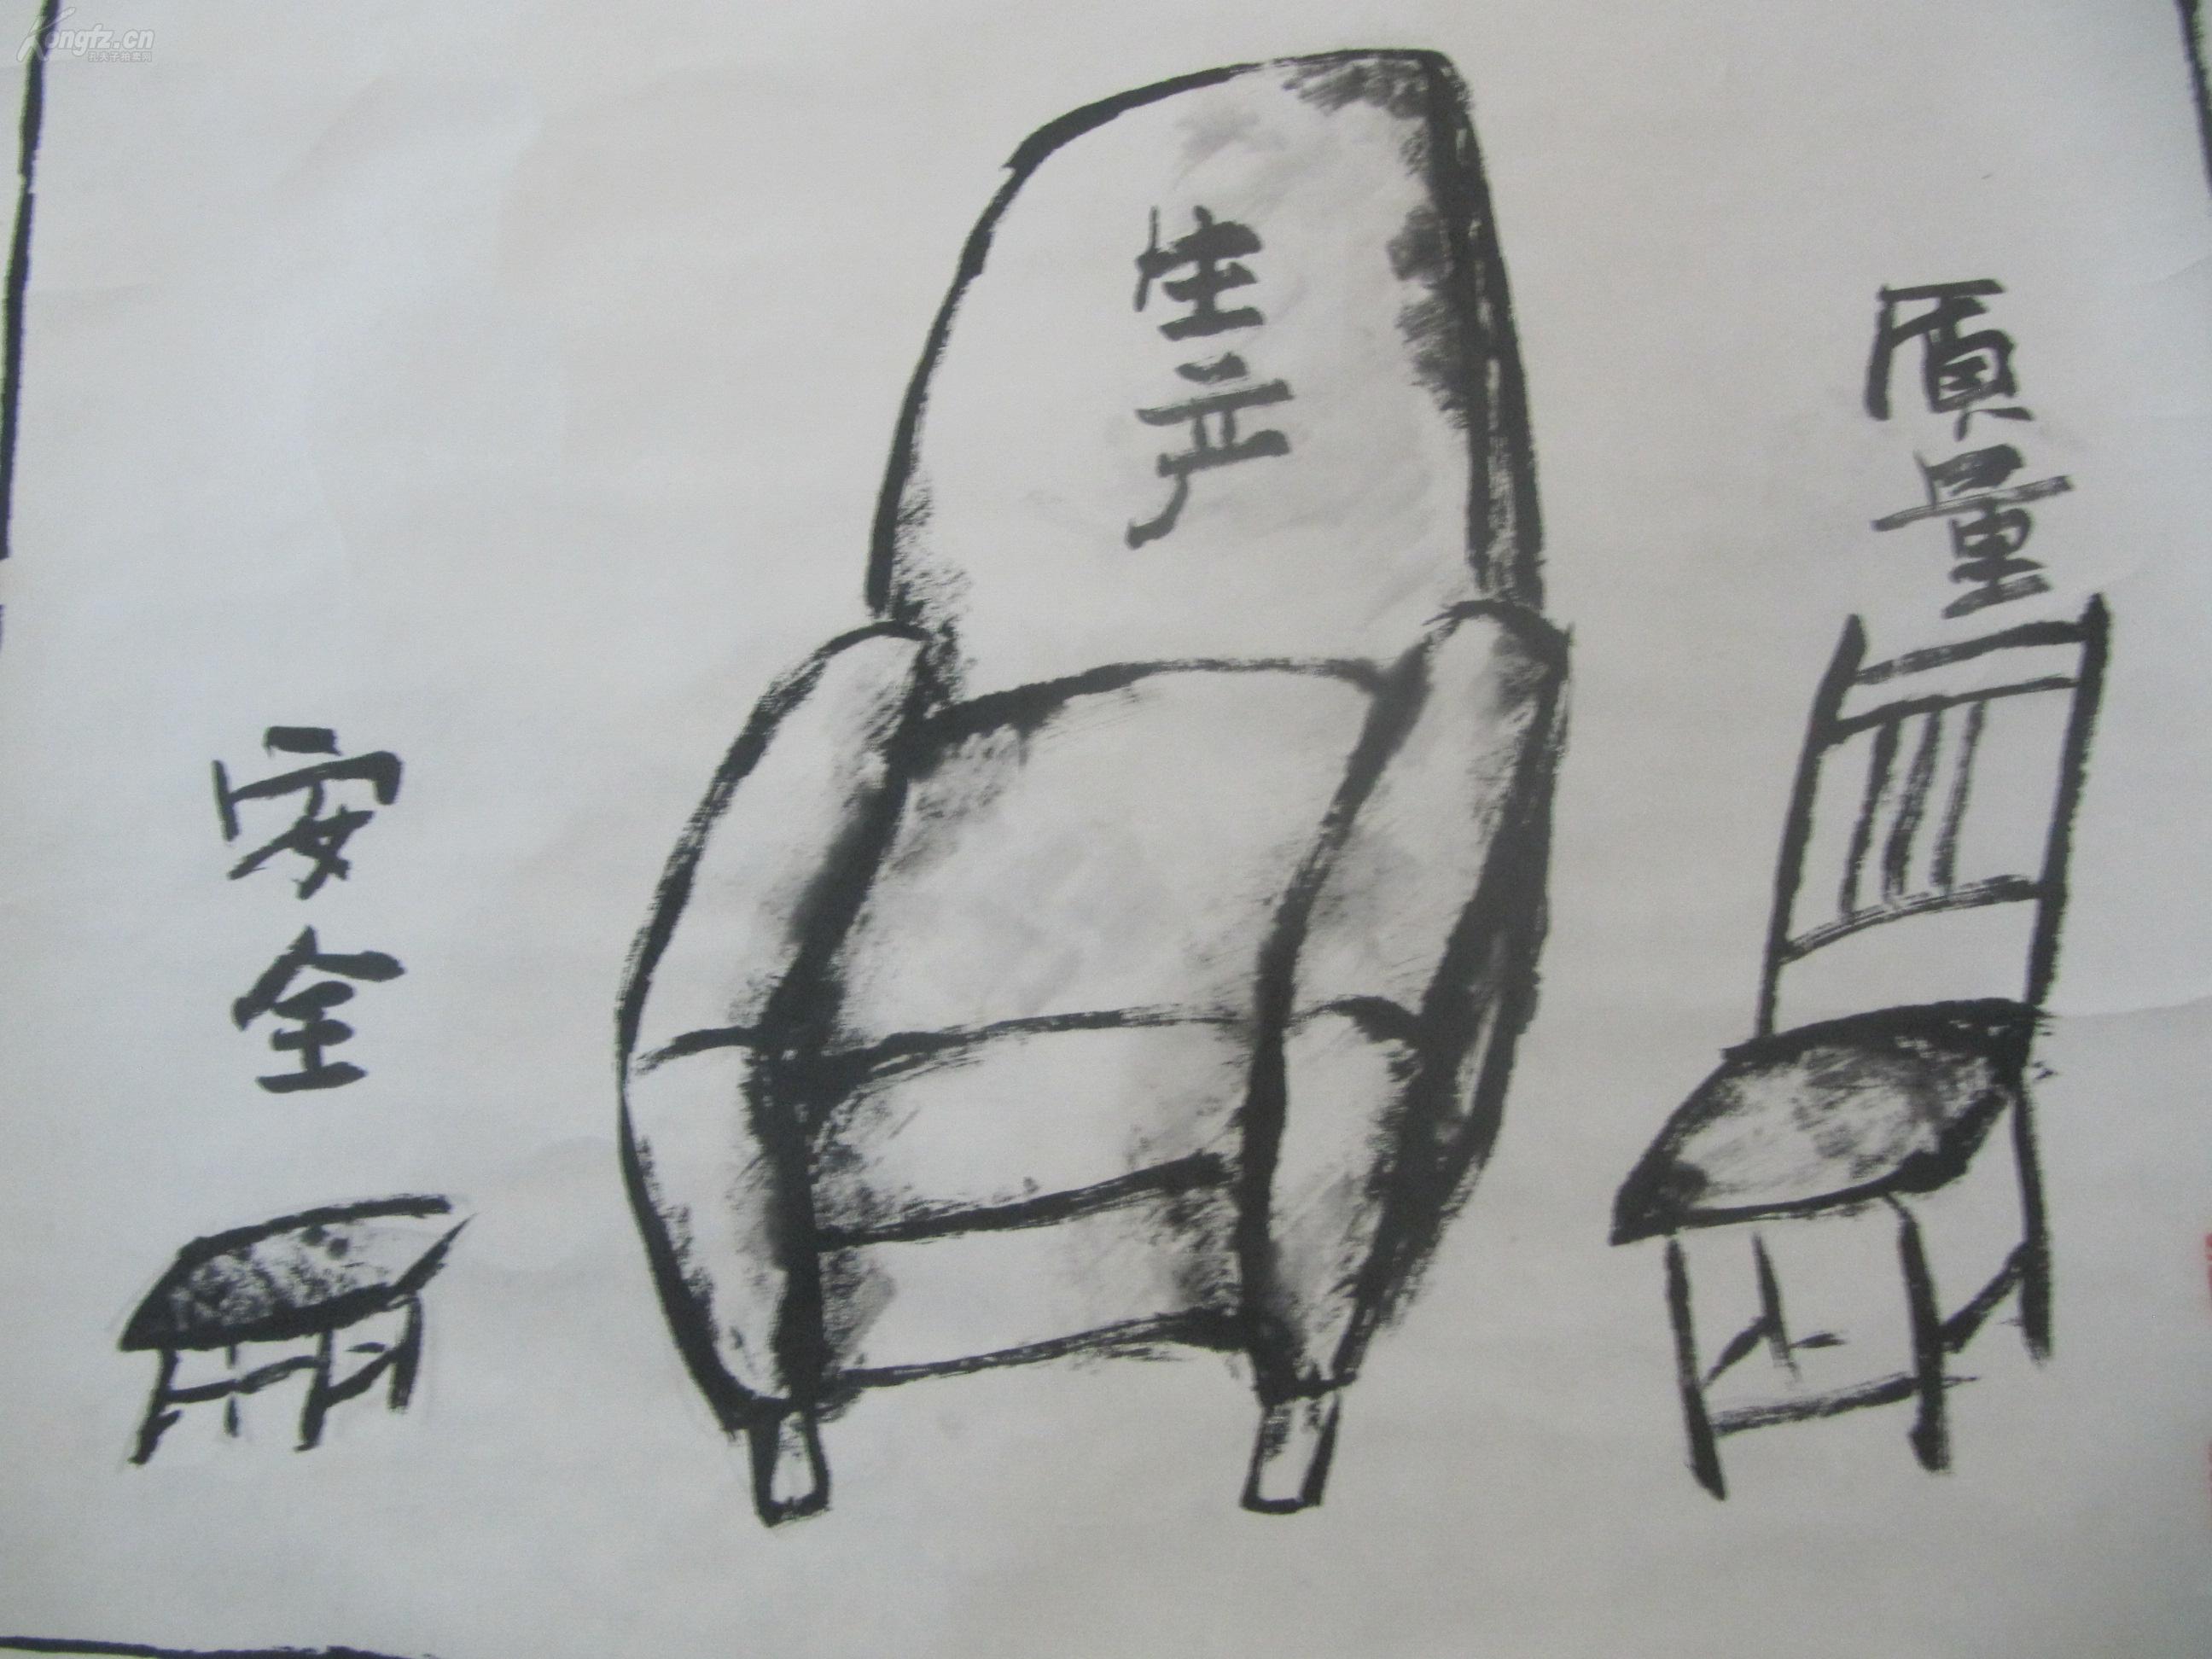 原装裱立轴 参赛作品 书法家刘 连超作 安全是第一位的 国画一幅 中心